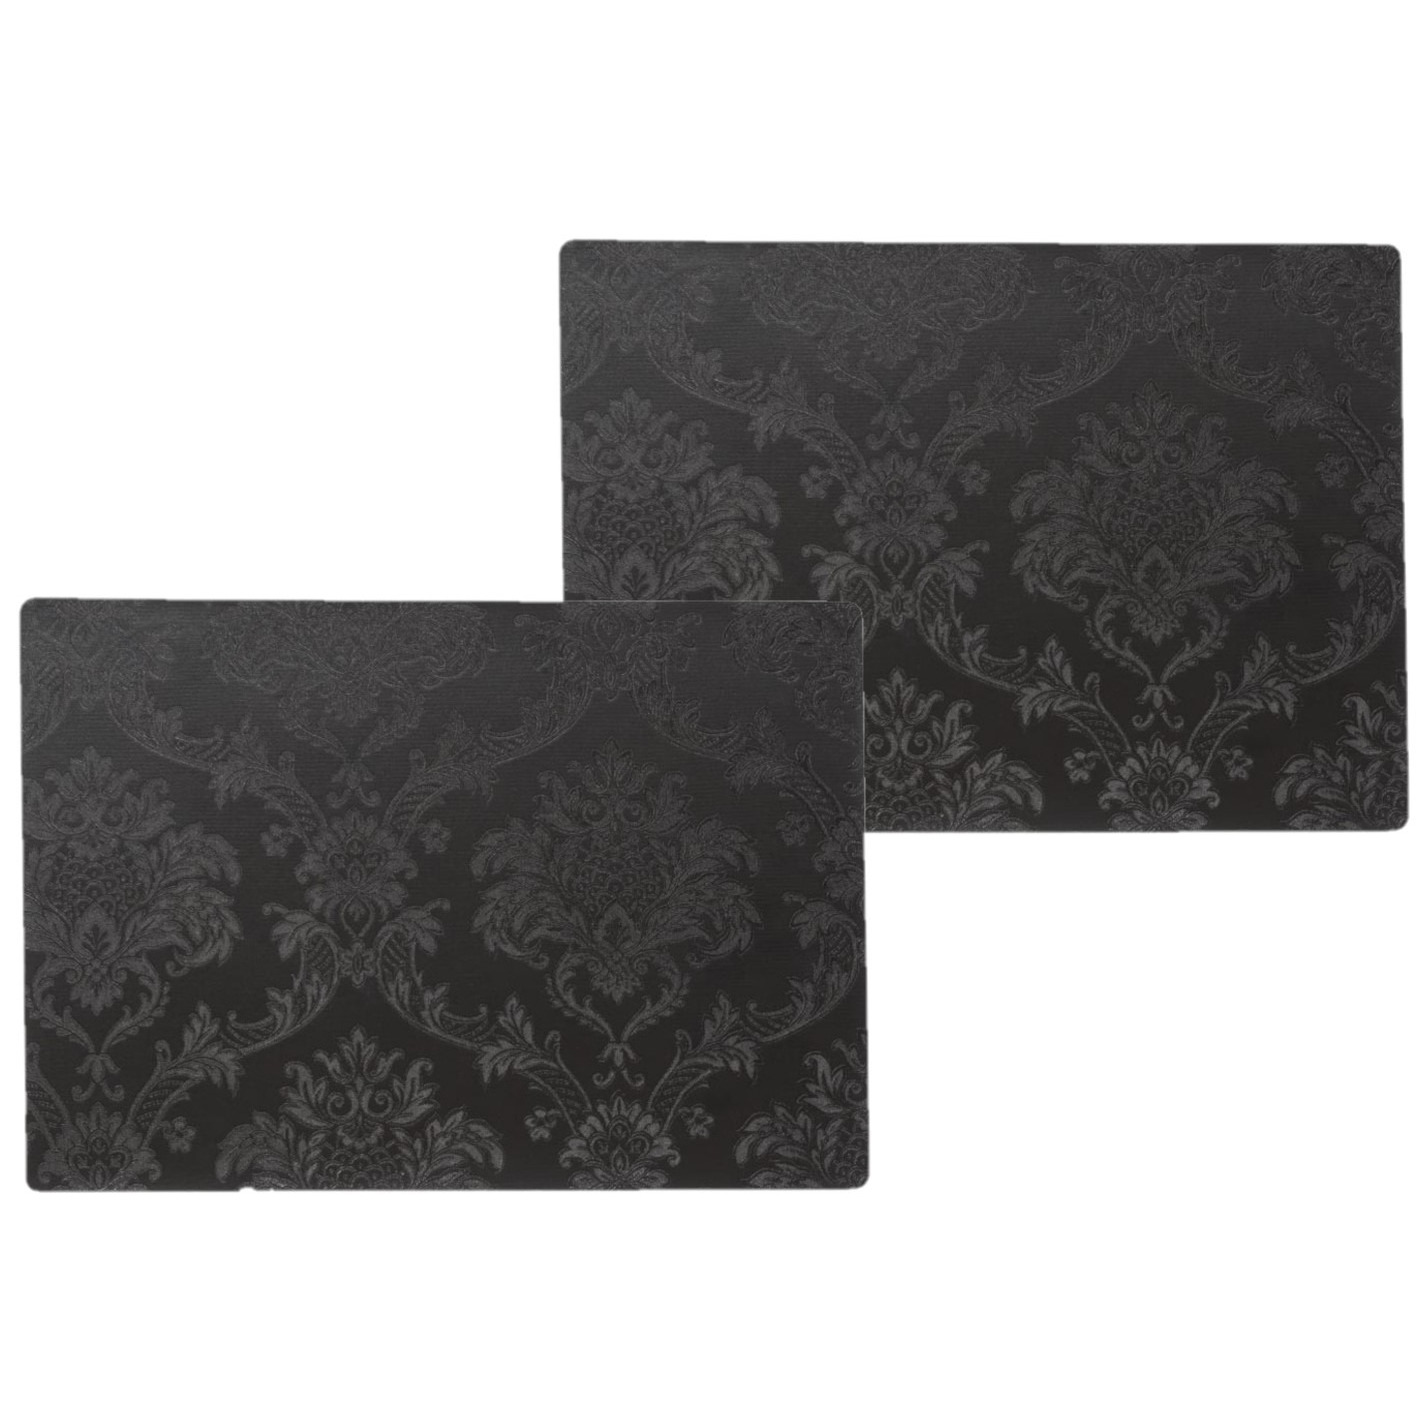 Wicotex 8x stuks stevige luxe Tafel placemats Amatista zwart 30 x 43 cm -